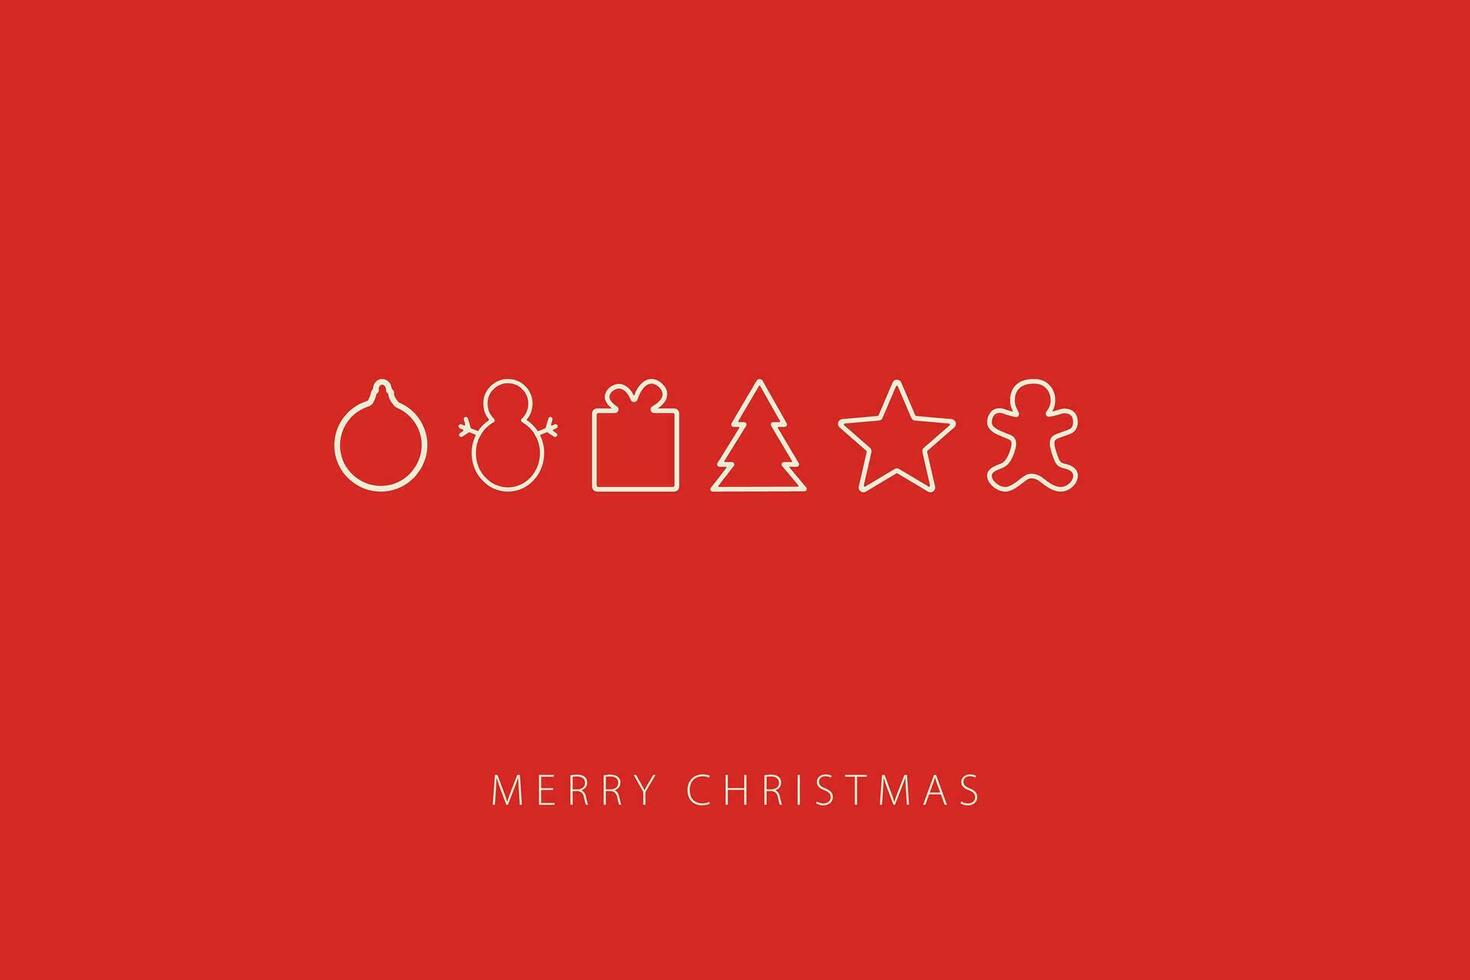 kort med glad jul text och jul dekorationer vektor